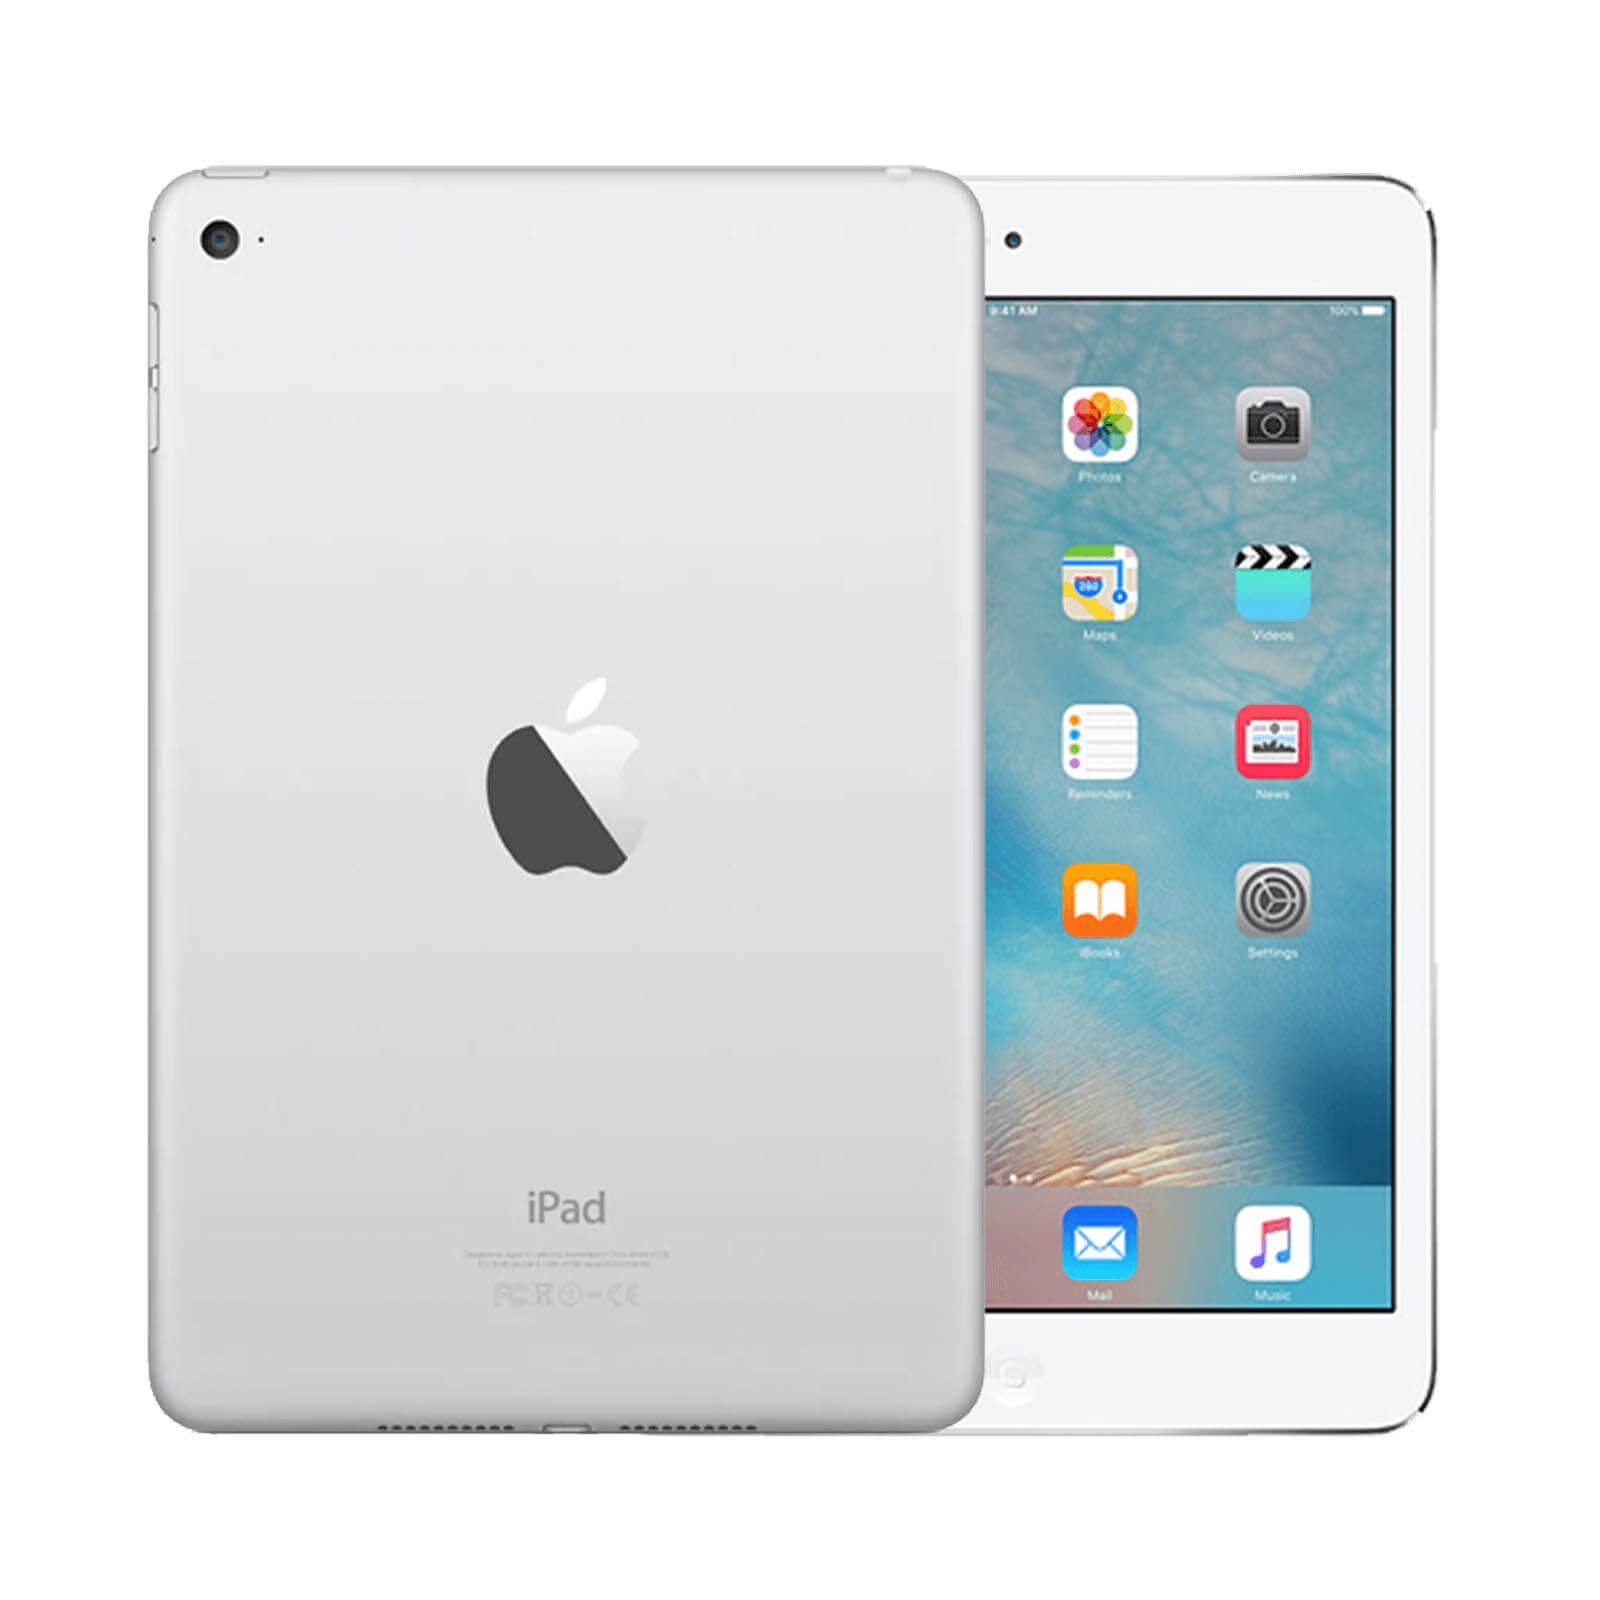 Apple iPad Mini 4 16GB Silver WiFi - Good 16GB Silver Good